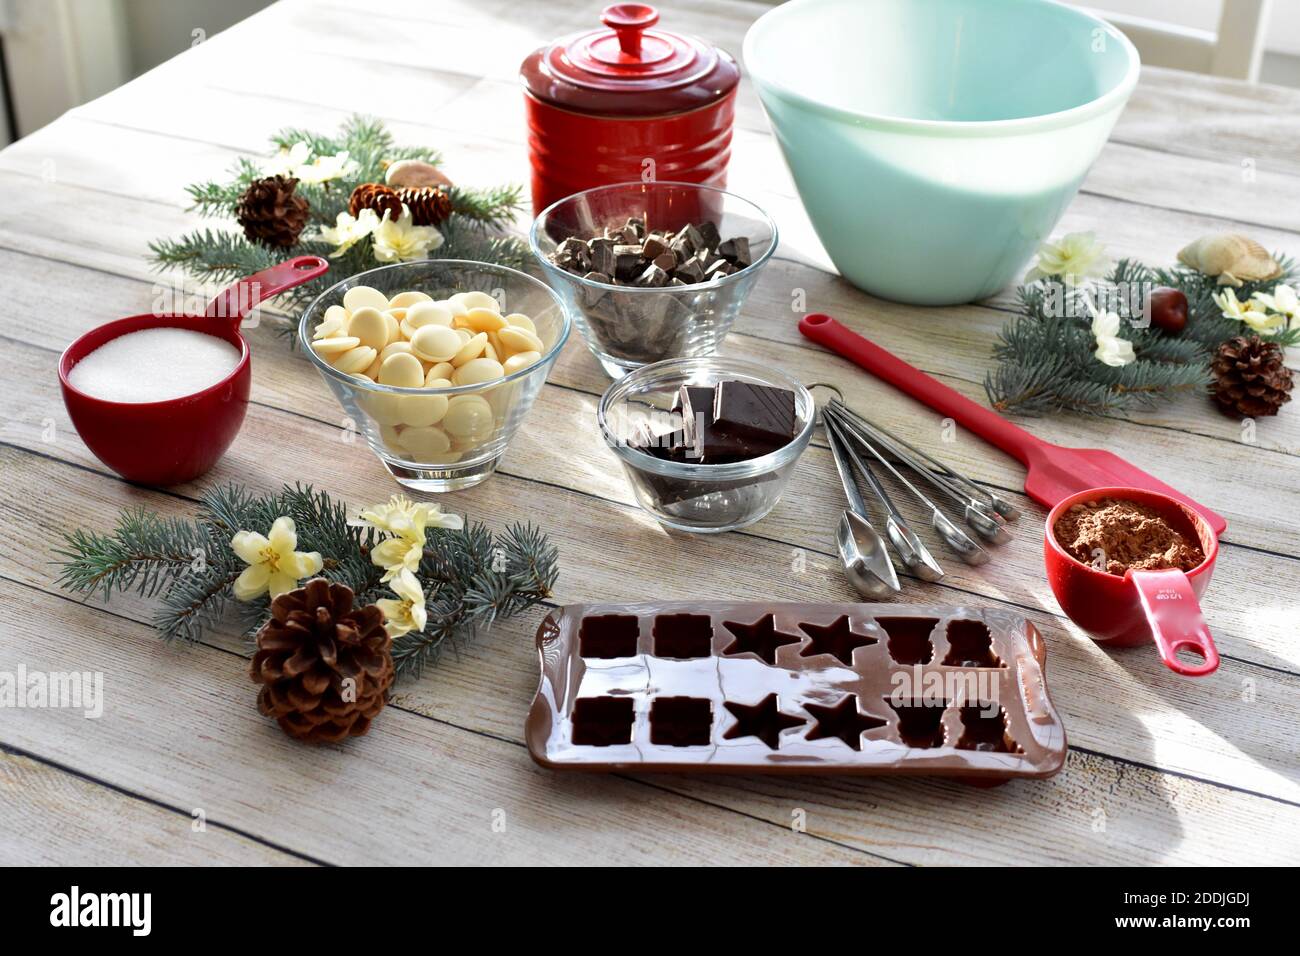 Festliche Urlaub Schokolade Herstellung von Vorräten und Zutaten zu Gourmet machen Leckereien und Geschenke für Familie und Freunde zur Weihnachtszeit Stockfoto